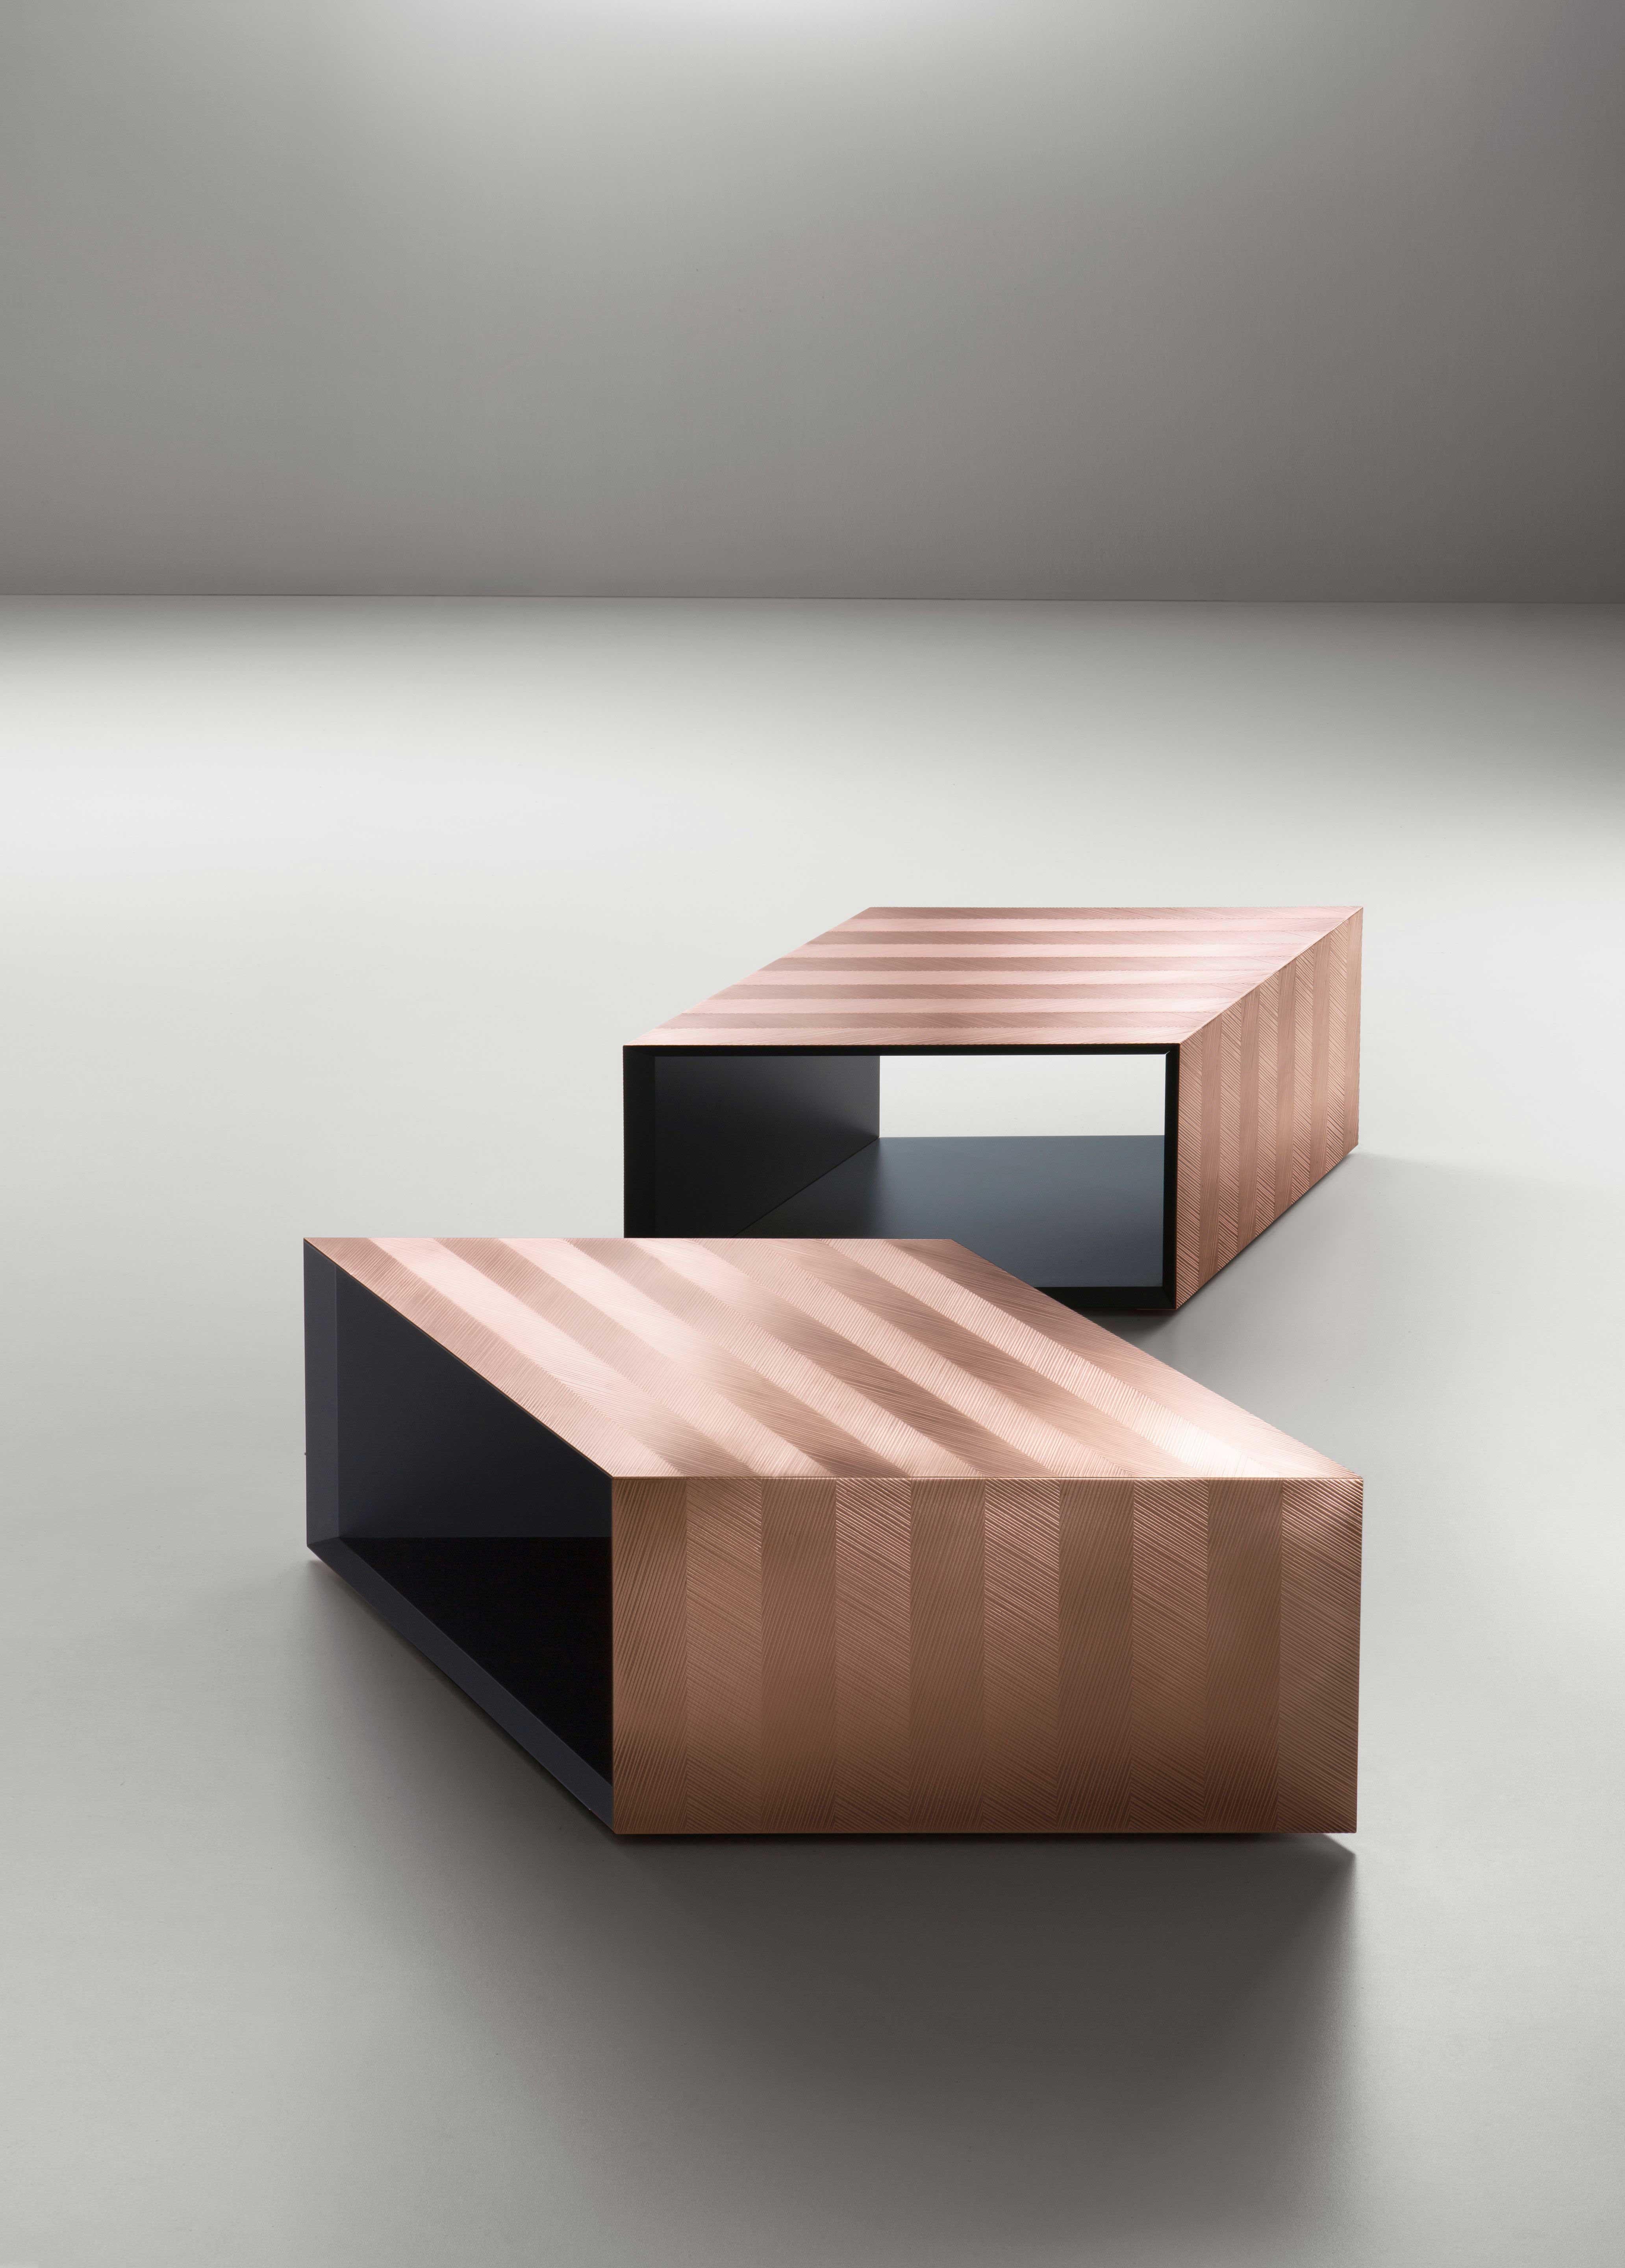 Table basse modulaire Alpha conçue par Martinelli Venezia pour DeCastelli. La table se compose de trois pièces rhomboïdes qui peuvent être déplacées ou tournées pour obtenir de nombreuses formes. La technique DeErosion est utilisée pour produire une